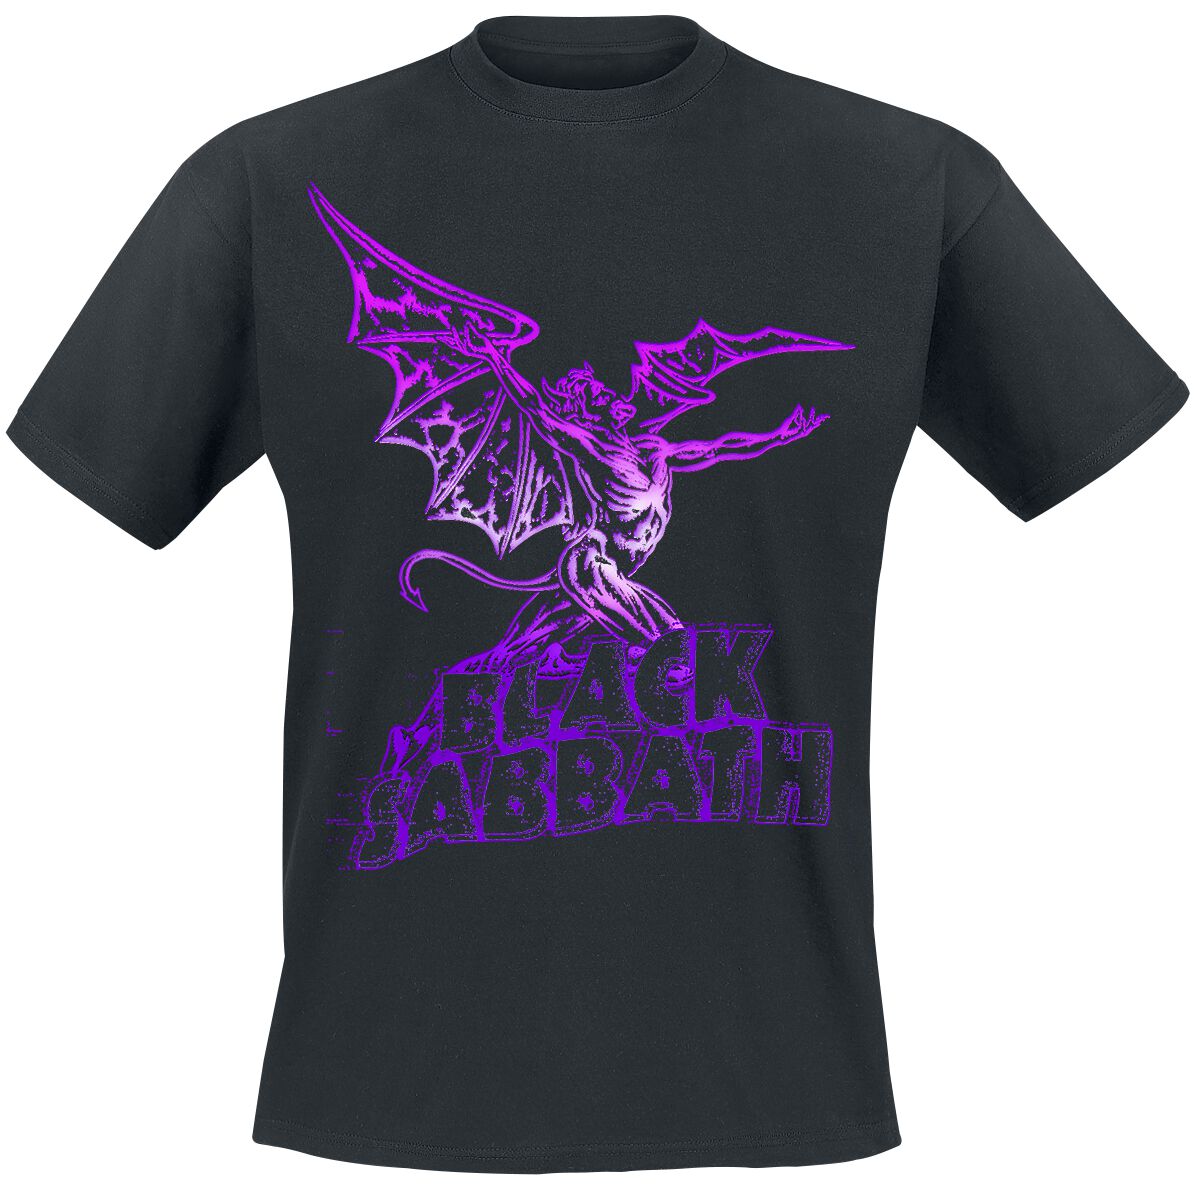 Black Sabbath T-Shirt - Gradiant Demon - S bis 3XL - für Männer - Größe XL - schwarz  - Lizenziertes Merchandise!